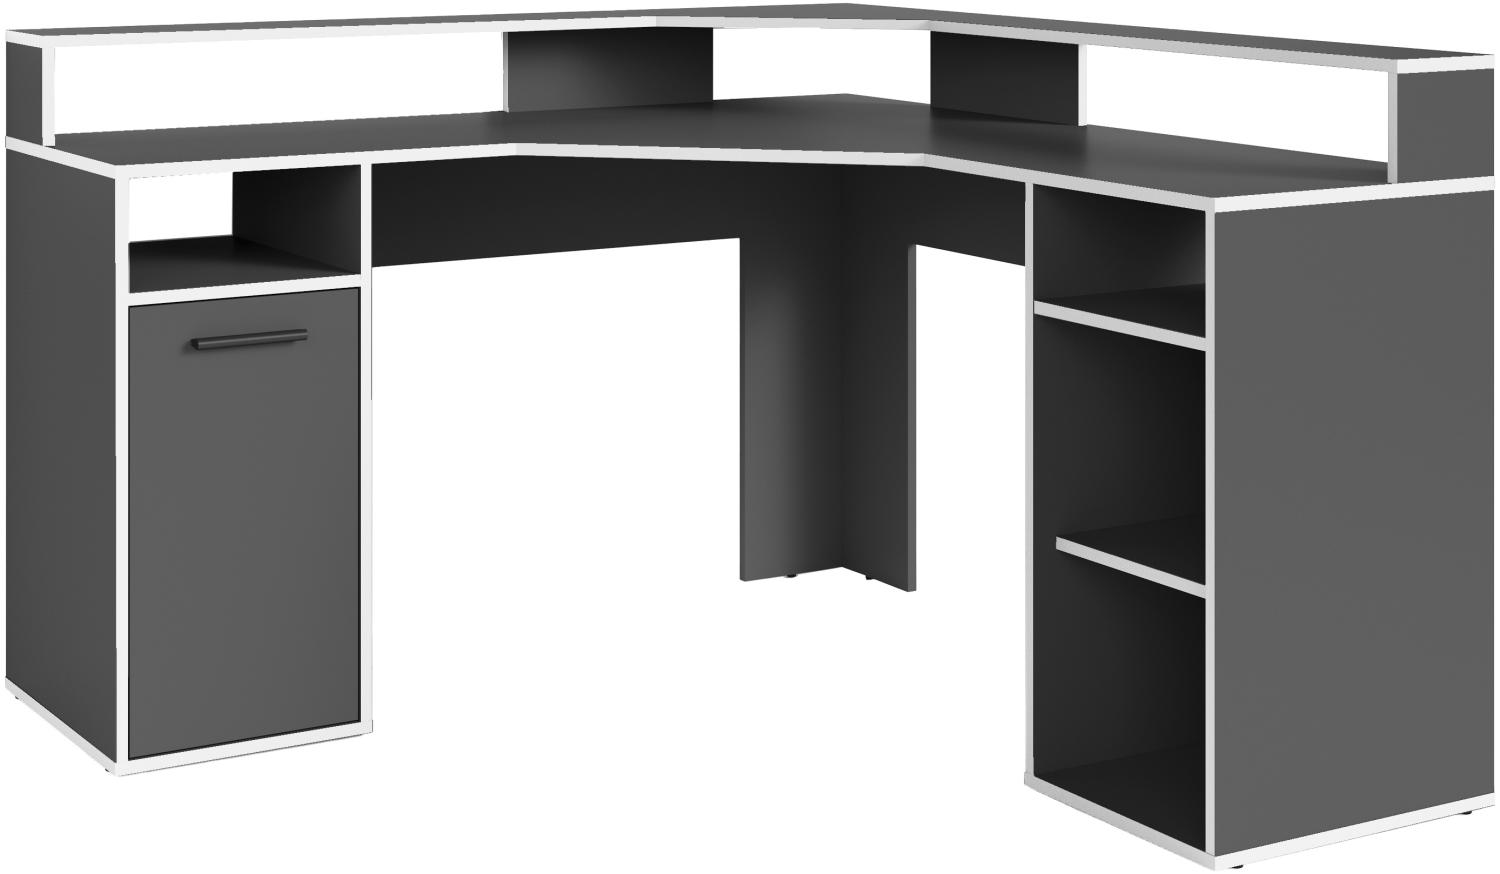 byLIVING Schreibtisch FOX / Gaming-Tisch in Anthrazit mit weißen Kanten / mit Aufsatz / Mit viel Stauraum und großer Tischplatte / Computer-Tisch / PC / Arbeits-Tisch / B 139, H 90,8, T 139 cm Bild 1